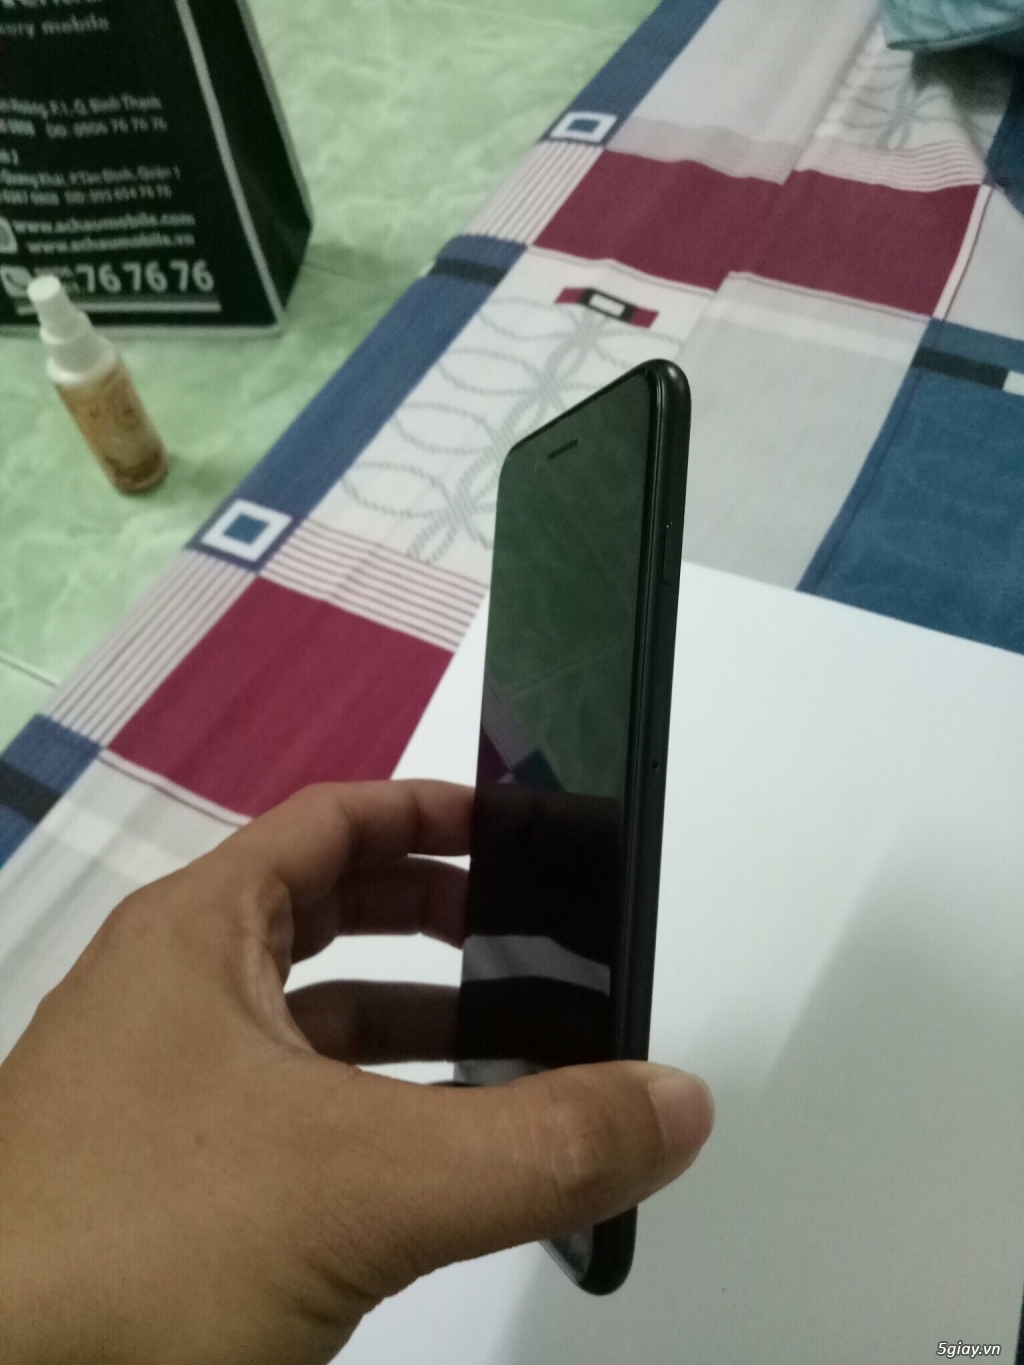 Iphone 7 Plus 128gb đen nhám hàng Mỹ LL - Full box - 99% - 18,xxx,xxx - 3